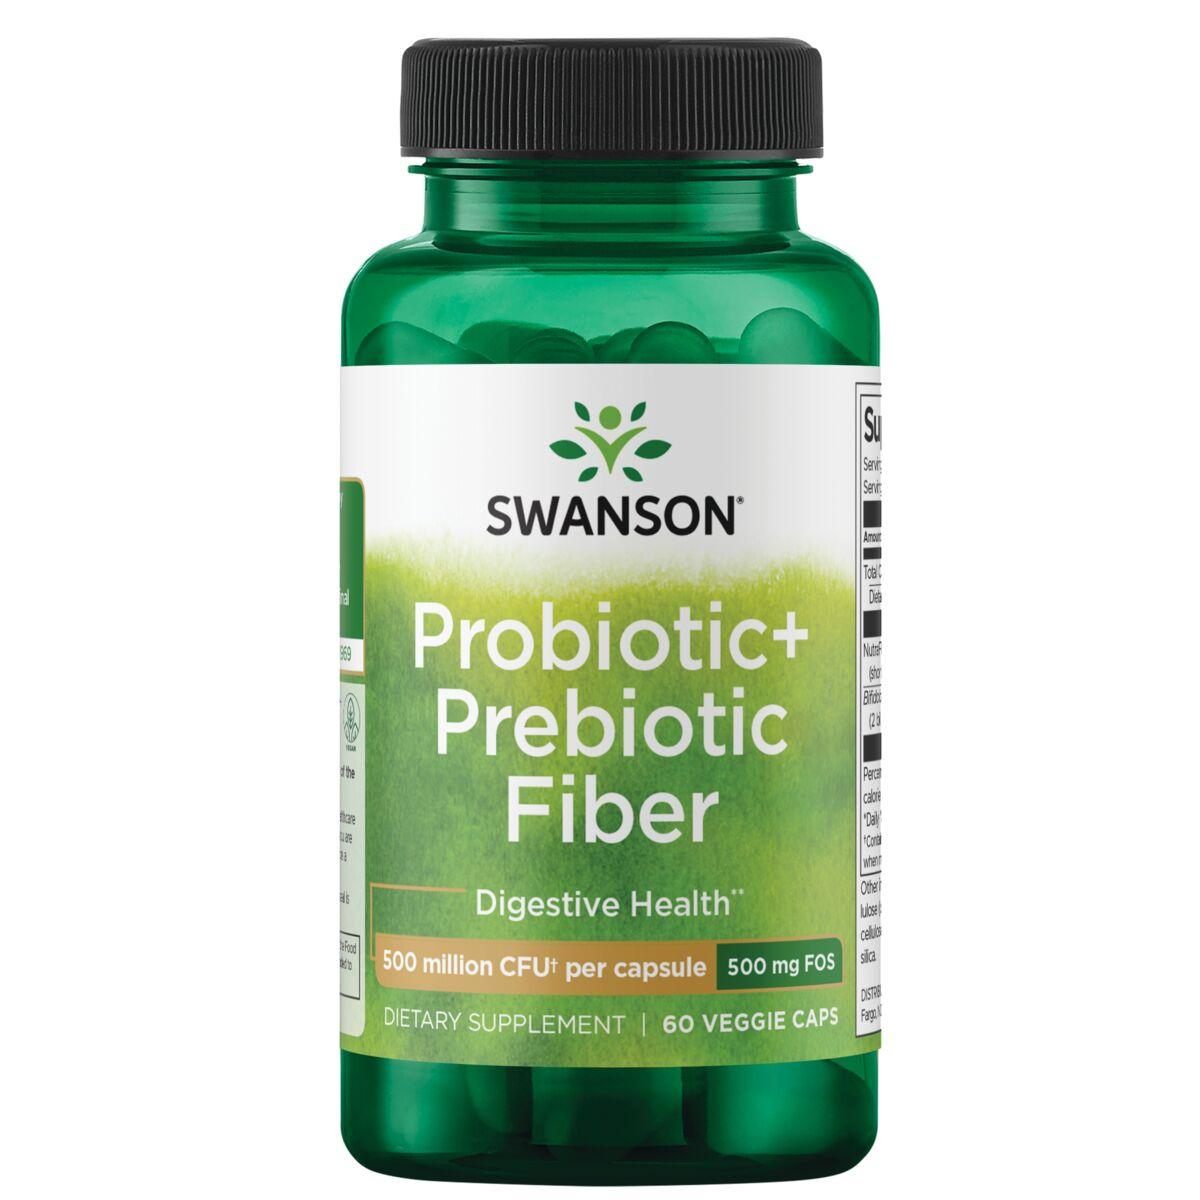 Swanson Probiotics Probiotic+ Prebiotic Fiber Supplement Vitamin | 500 Million CFU | 60 Veg Caps